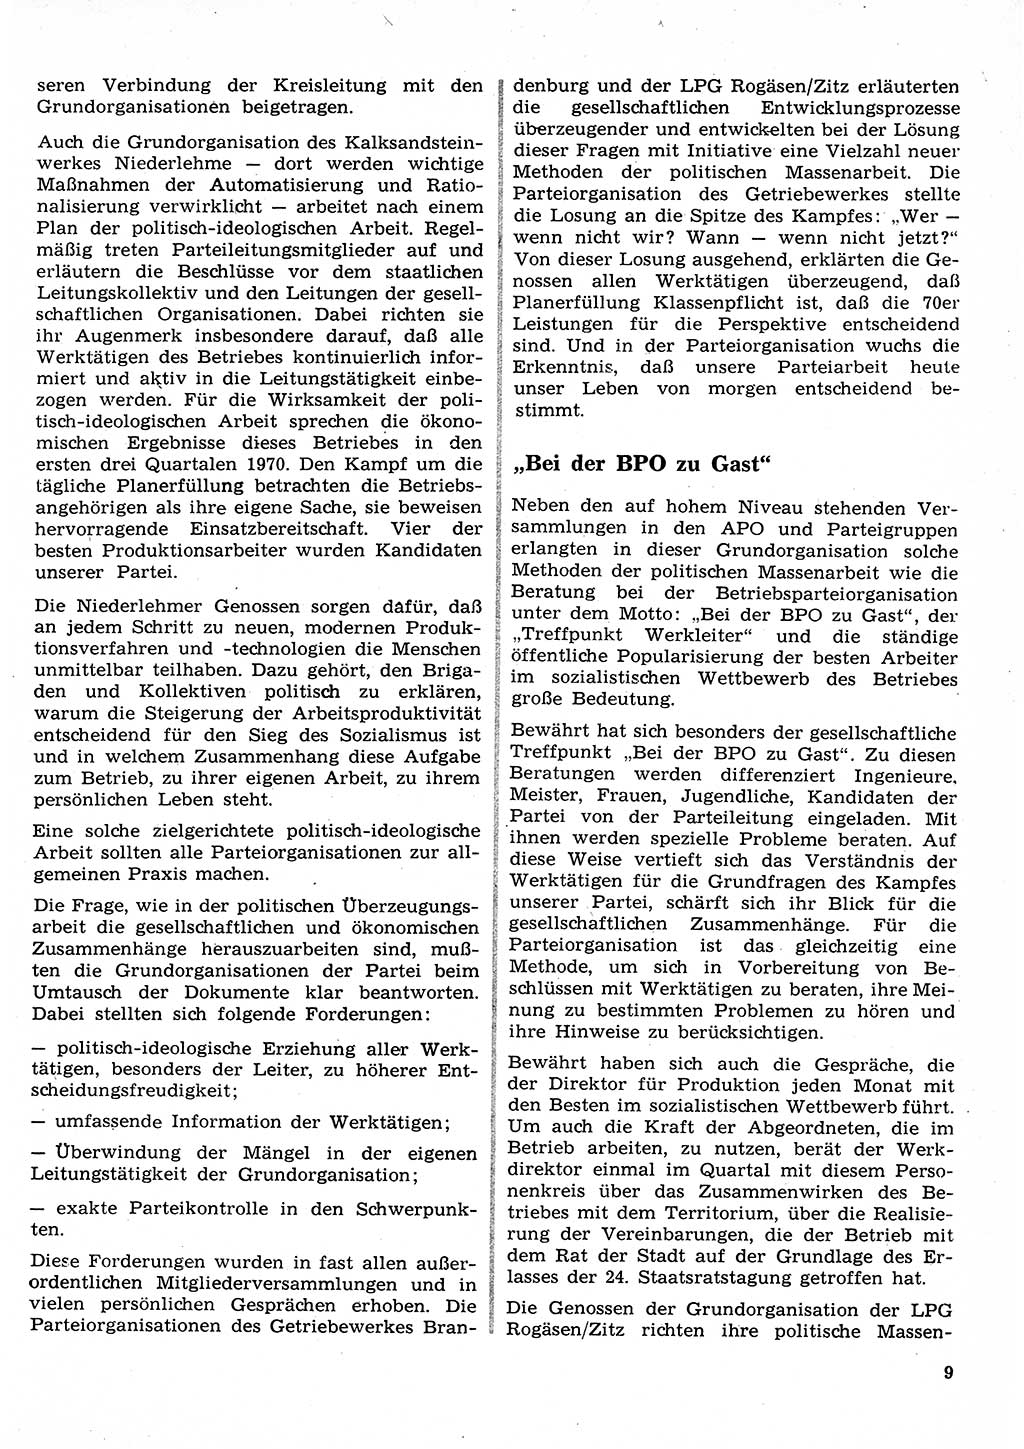 Neuer Weg (NW), Organ des Zentralkomitees (ZK) der SED (Sozialistische Einheitspartei Deutschlands) für Fragen des Parteilebens, 26. Jahrgang [Deutsche Demokratische Republik (DDR)] 1971, Seite 9 (NW ZK SED DDR 1971, S. 9)